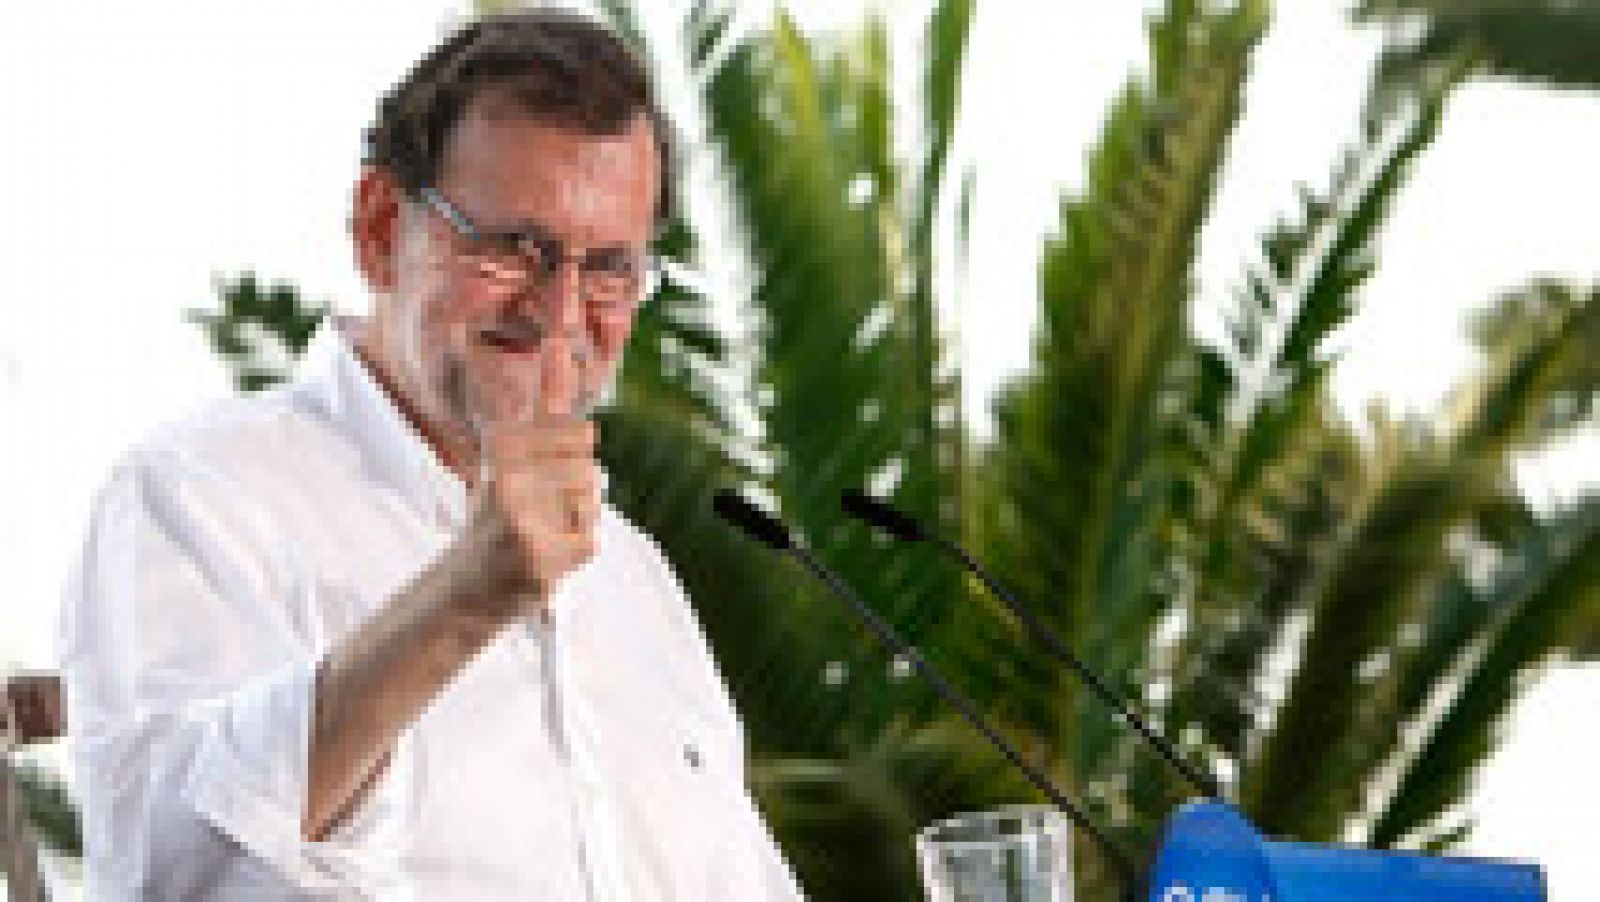 Elecciones generales 26J - Rajoy insiste en que votar al PP es "lo más útil para evitar el extremismo"